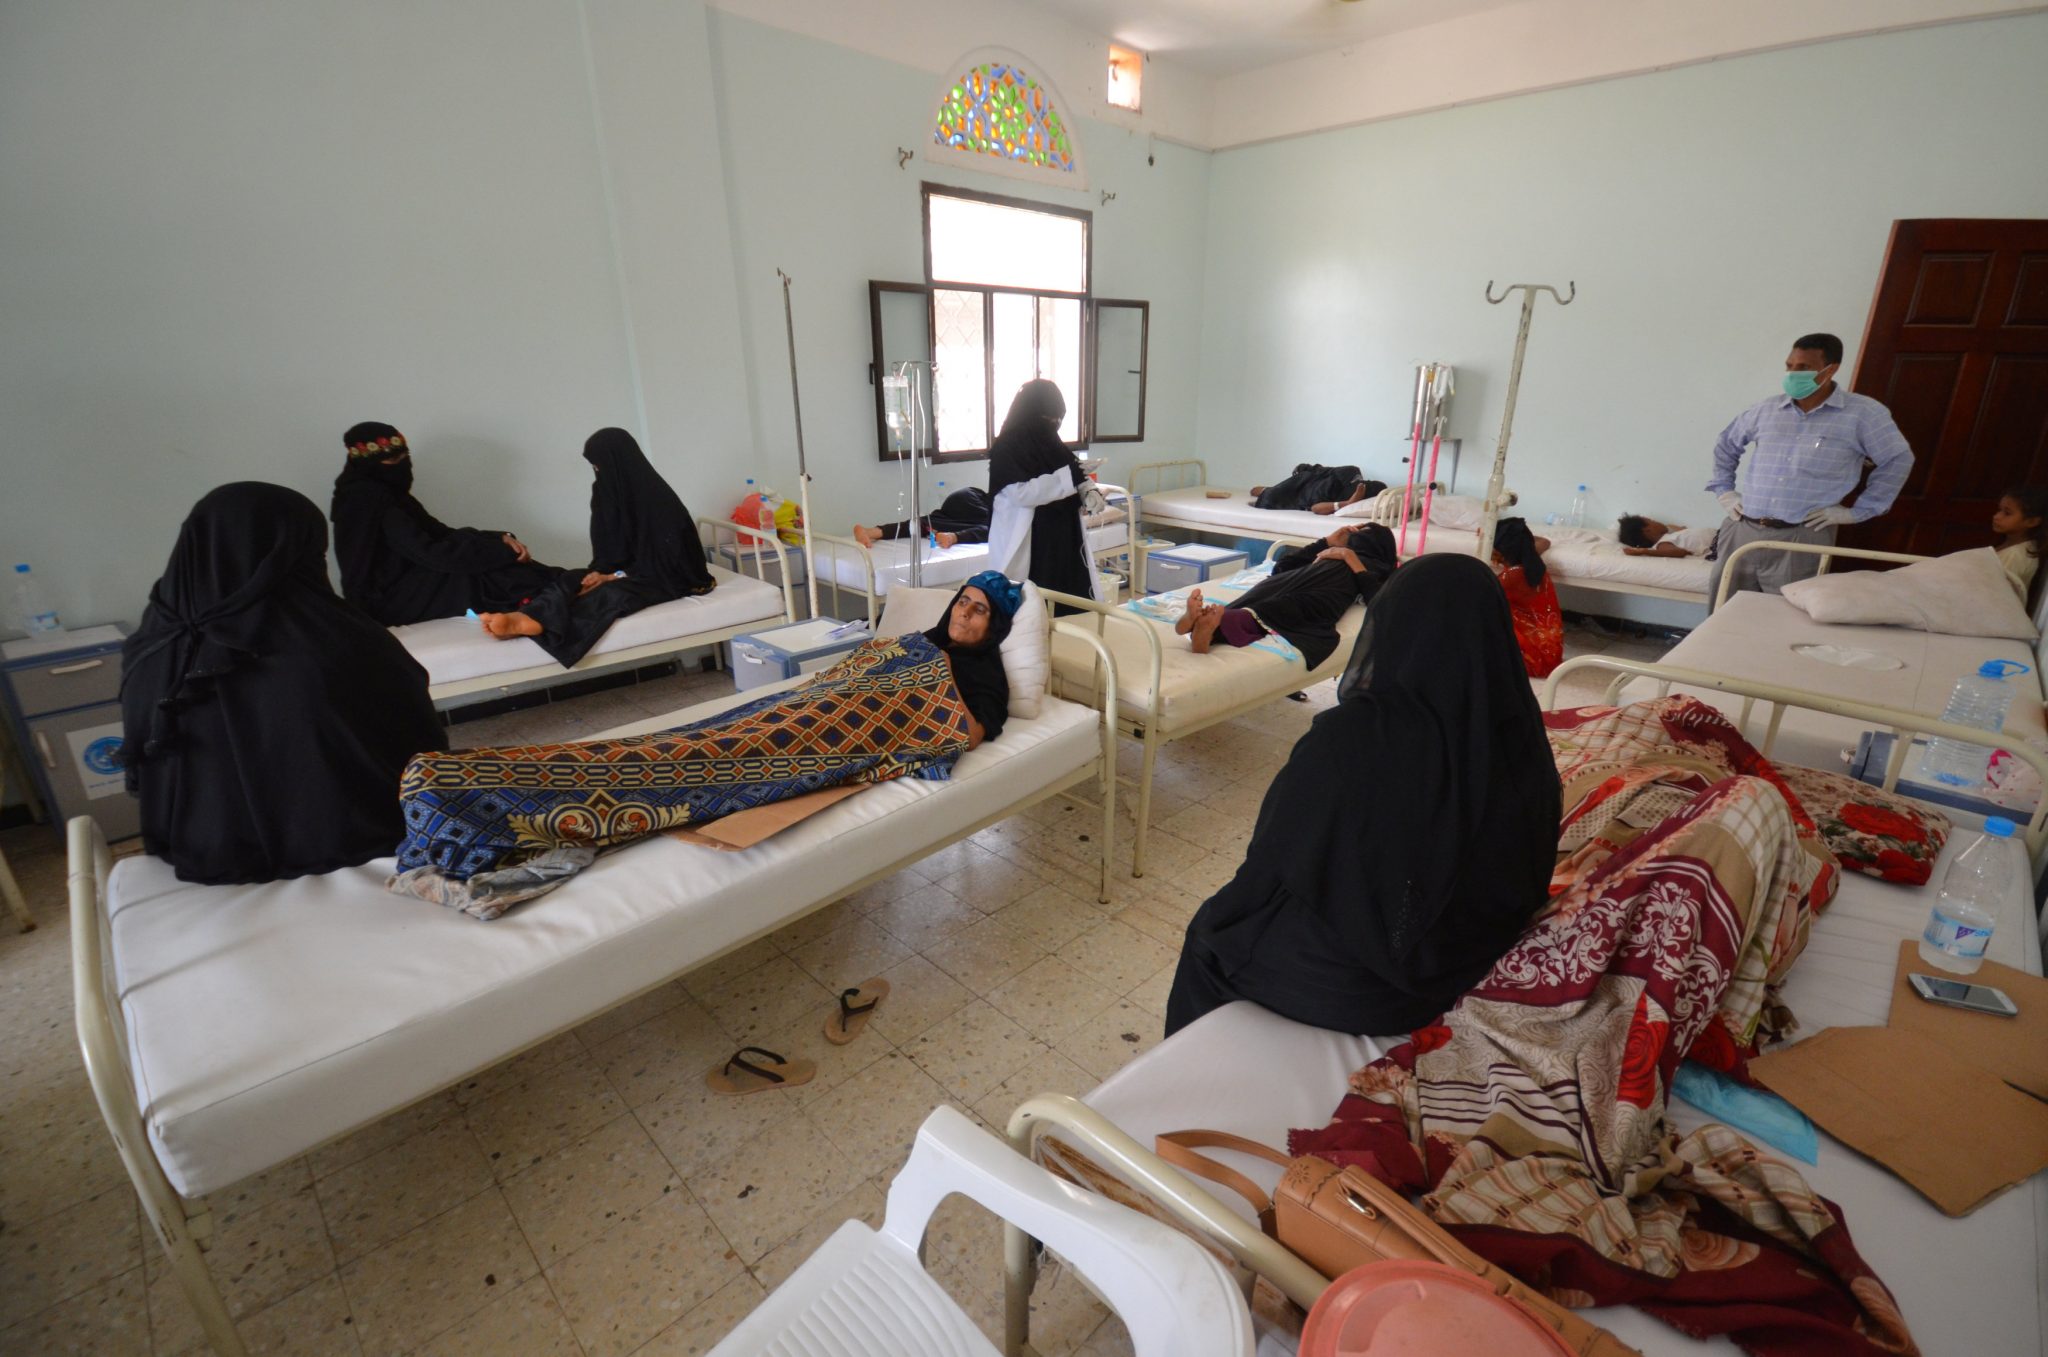   ارتفاع حصيلة الوفيات بوباء الكوليرا في اليمن